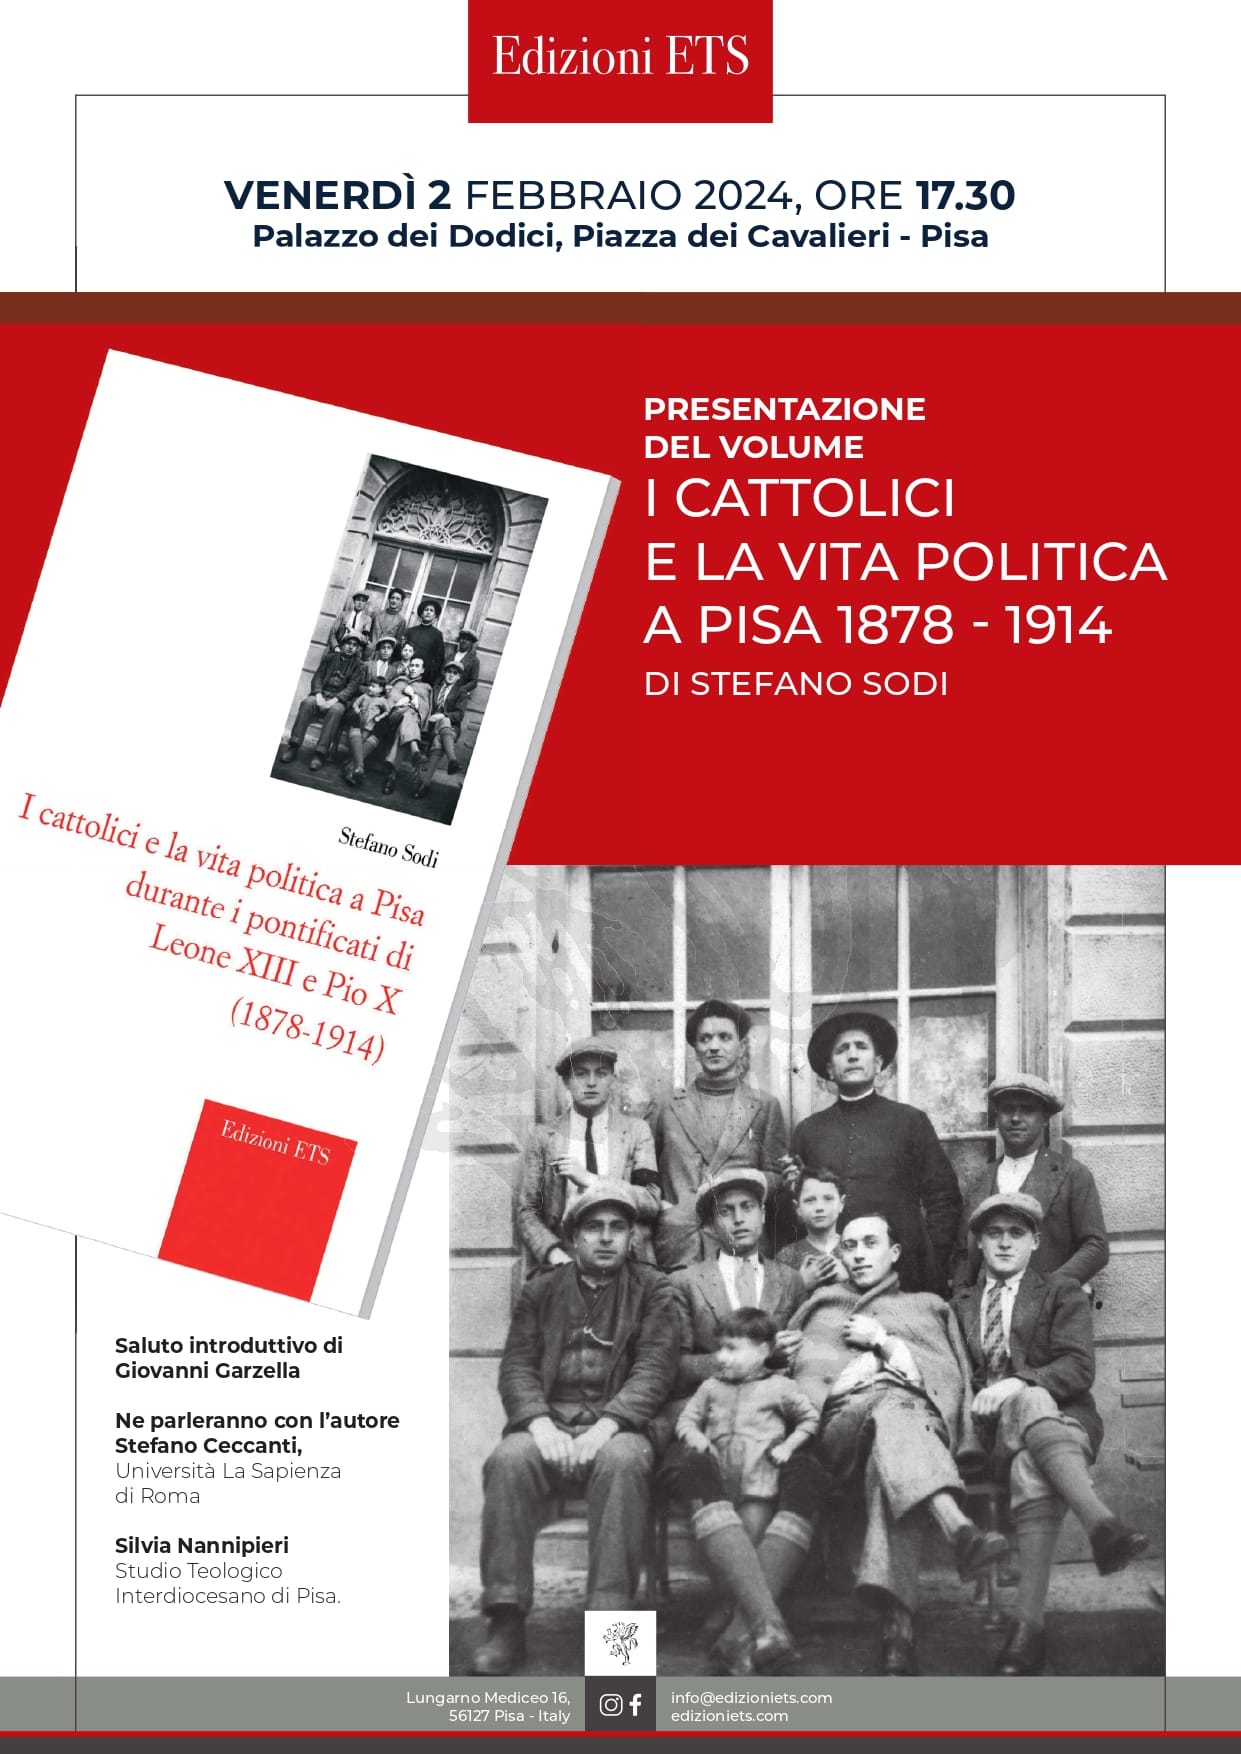 I CATTOLICI E LA VITA POLITICA A PISA 1878-1914